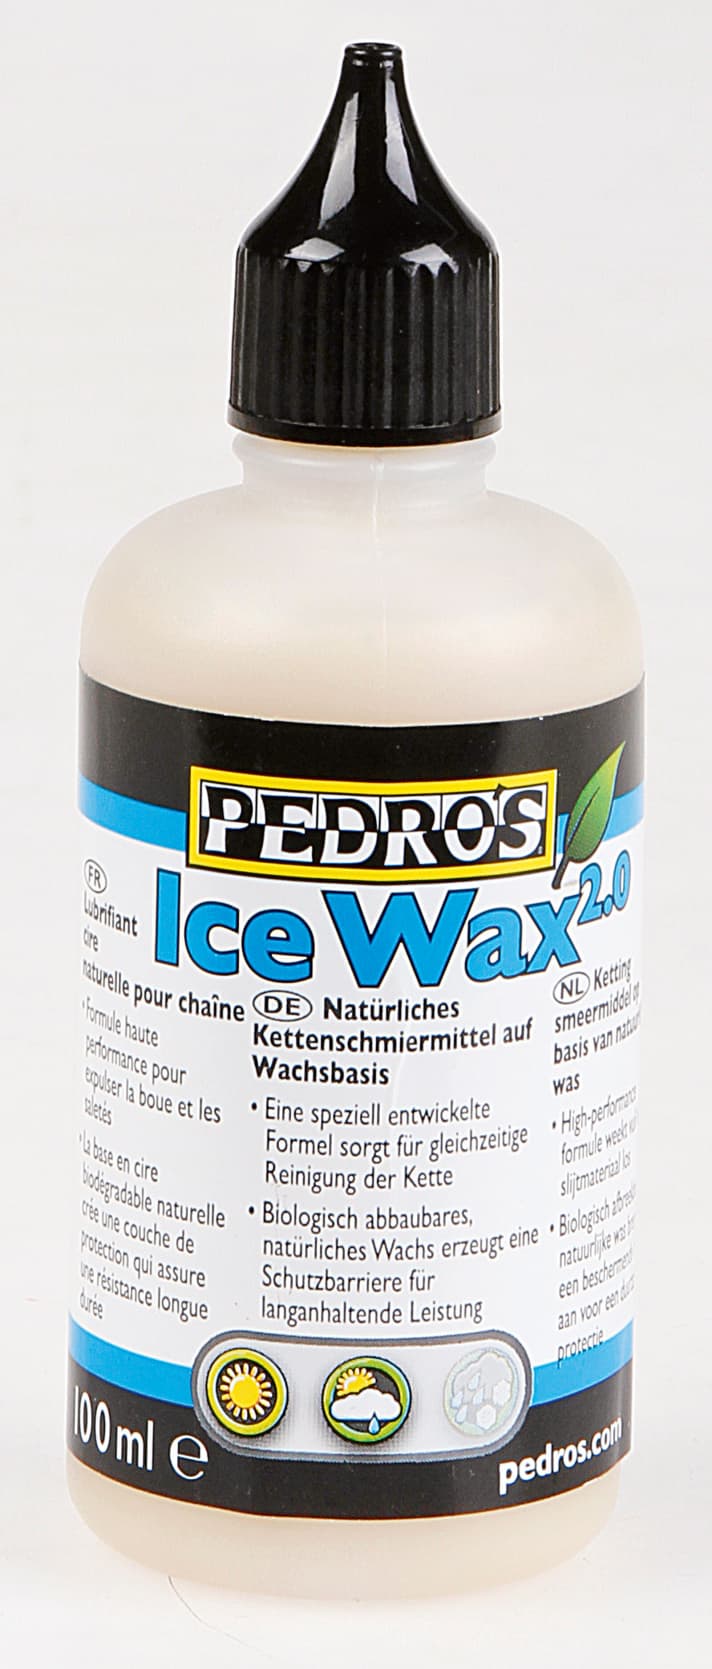   Pedro’s Ice Wax 2.0